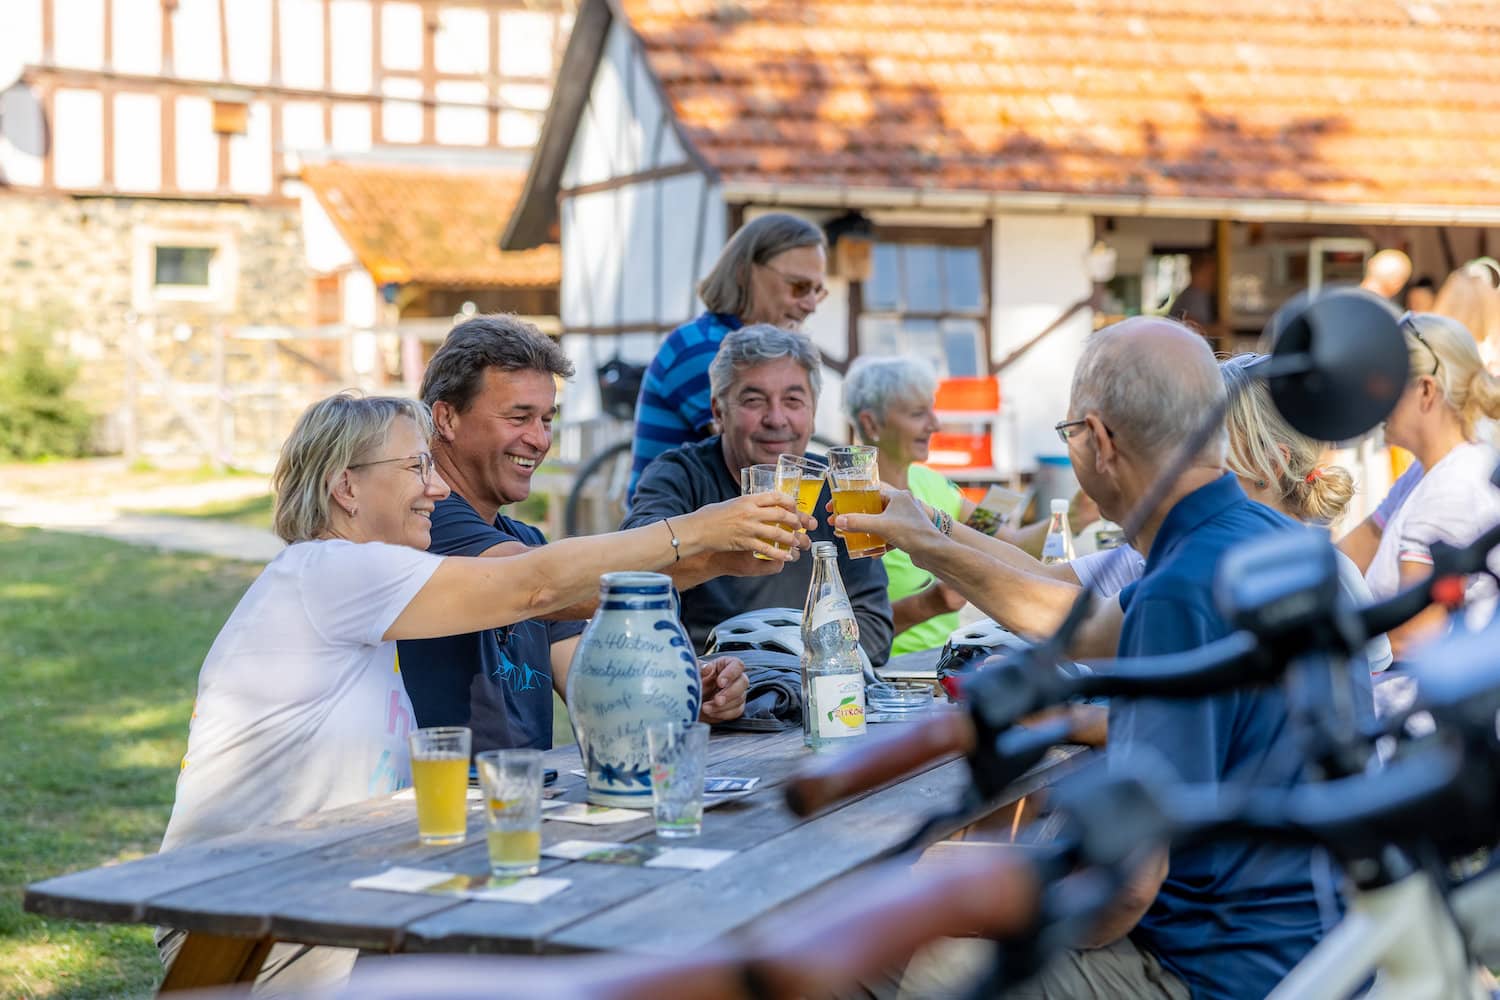 Verschillende mensen zitten buiten aan een tafel voor een vakwerkhuis in de Auenlandhof in Wetterau en proosten met een glas citroensap.